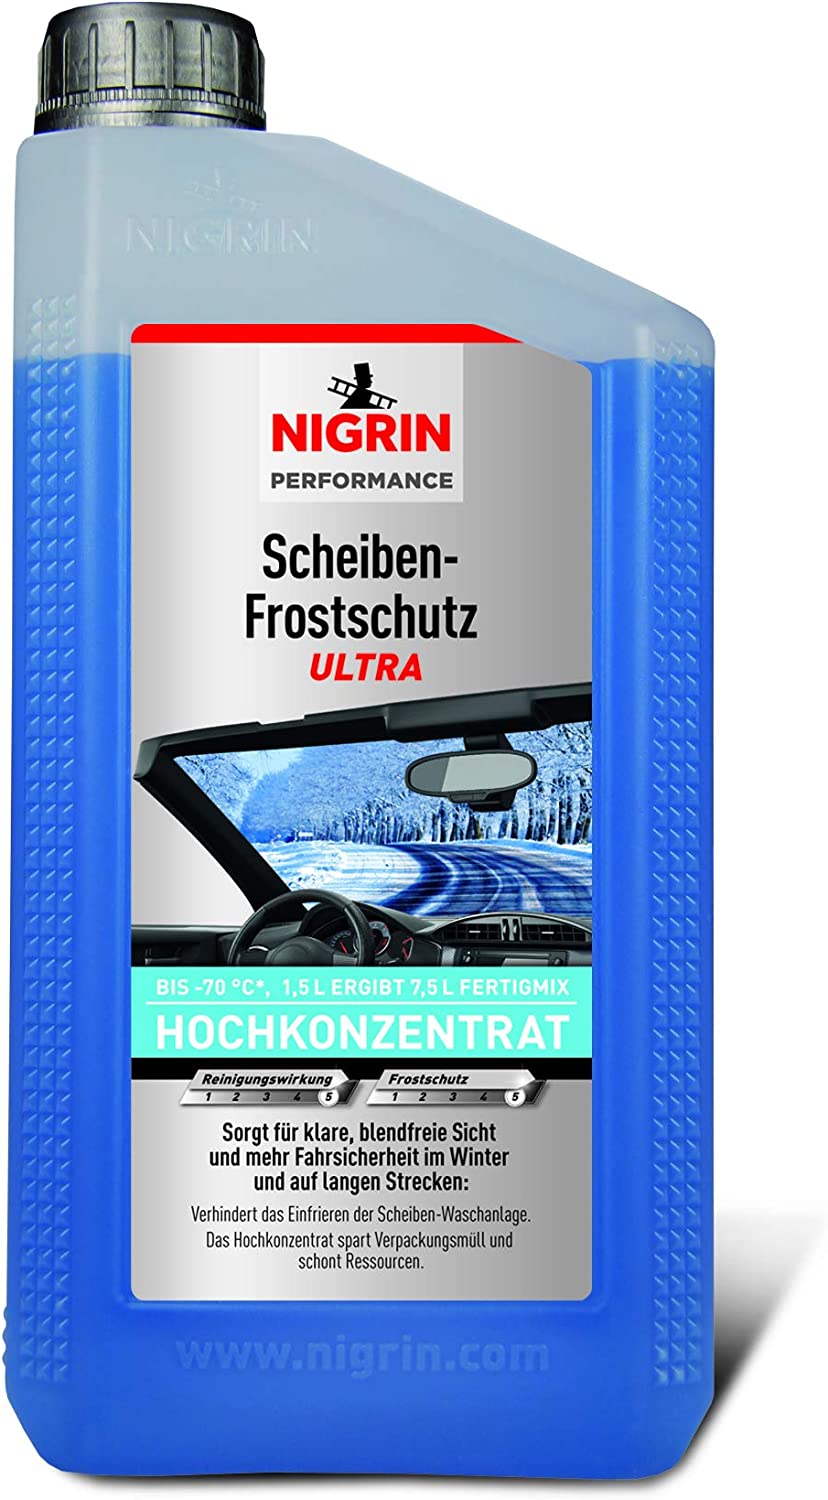 NIGRIN Marken-Scheiben-Frostschutz Ultra, bis -70°C, 1,5 l (Ergibt